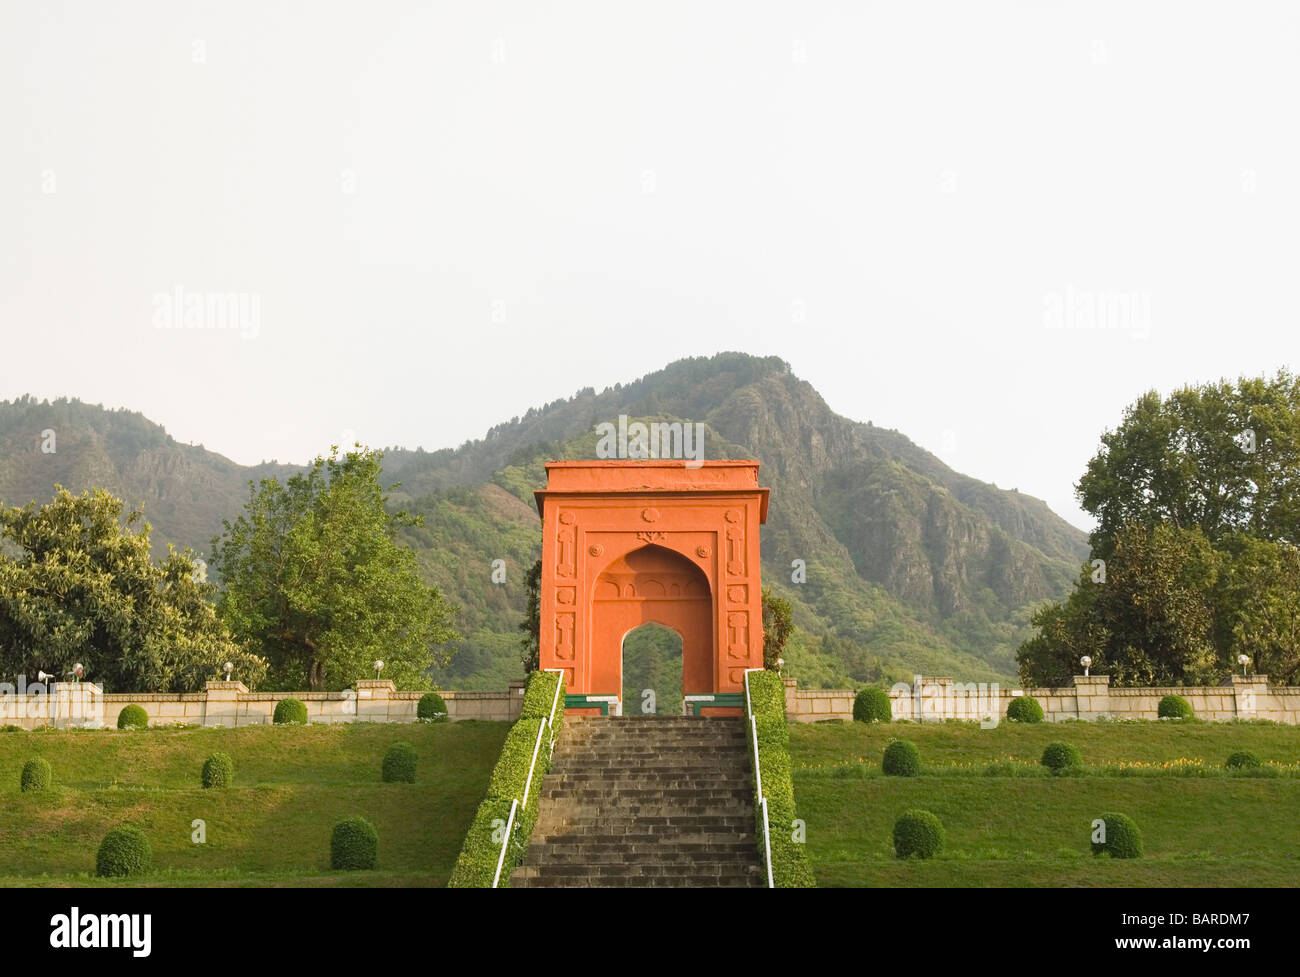 Gate of a garden, Chashmashahi Garden, Srinagar, Jammu and Kashmir, India Stock Photo